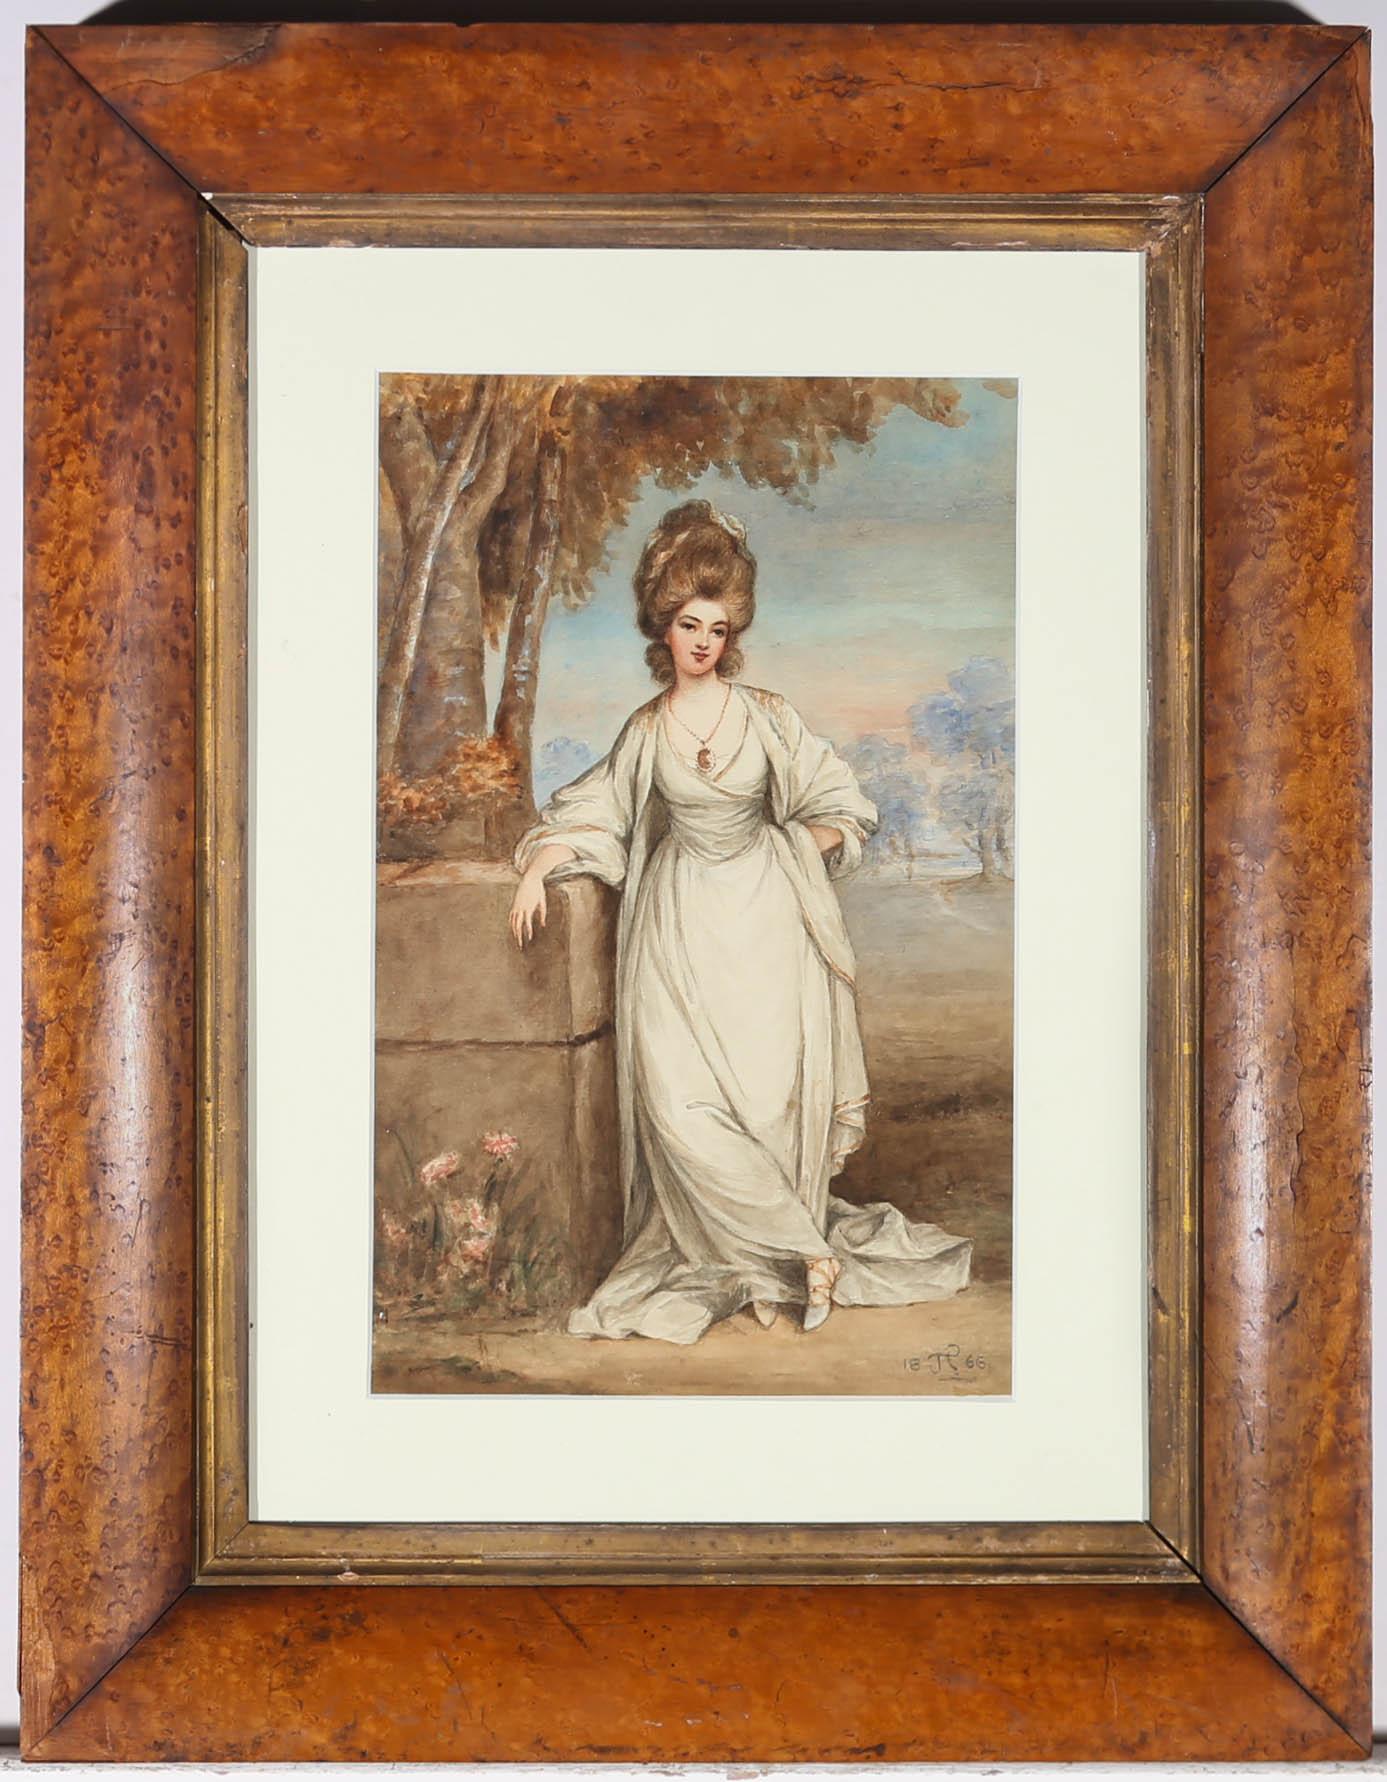 Charmante aquarelle de la fin du XIXe siècle représentant une jeune femme finement vêtue d'une robe blanche flottante et coiffée avec élégance, selon la mode du XVIIIe siècle. L'artiste a apposé son monogramme et la date dans le coin inférieur